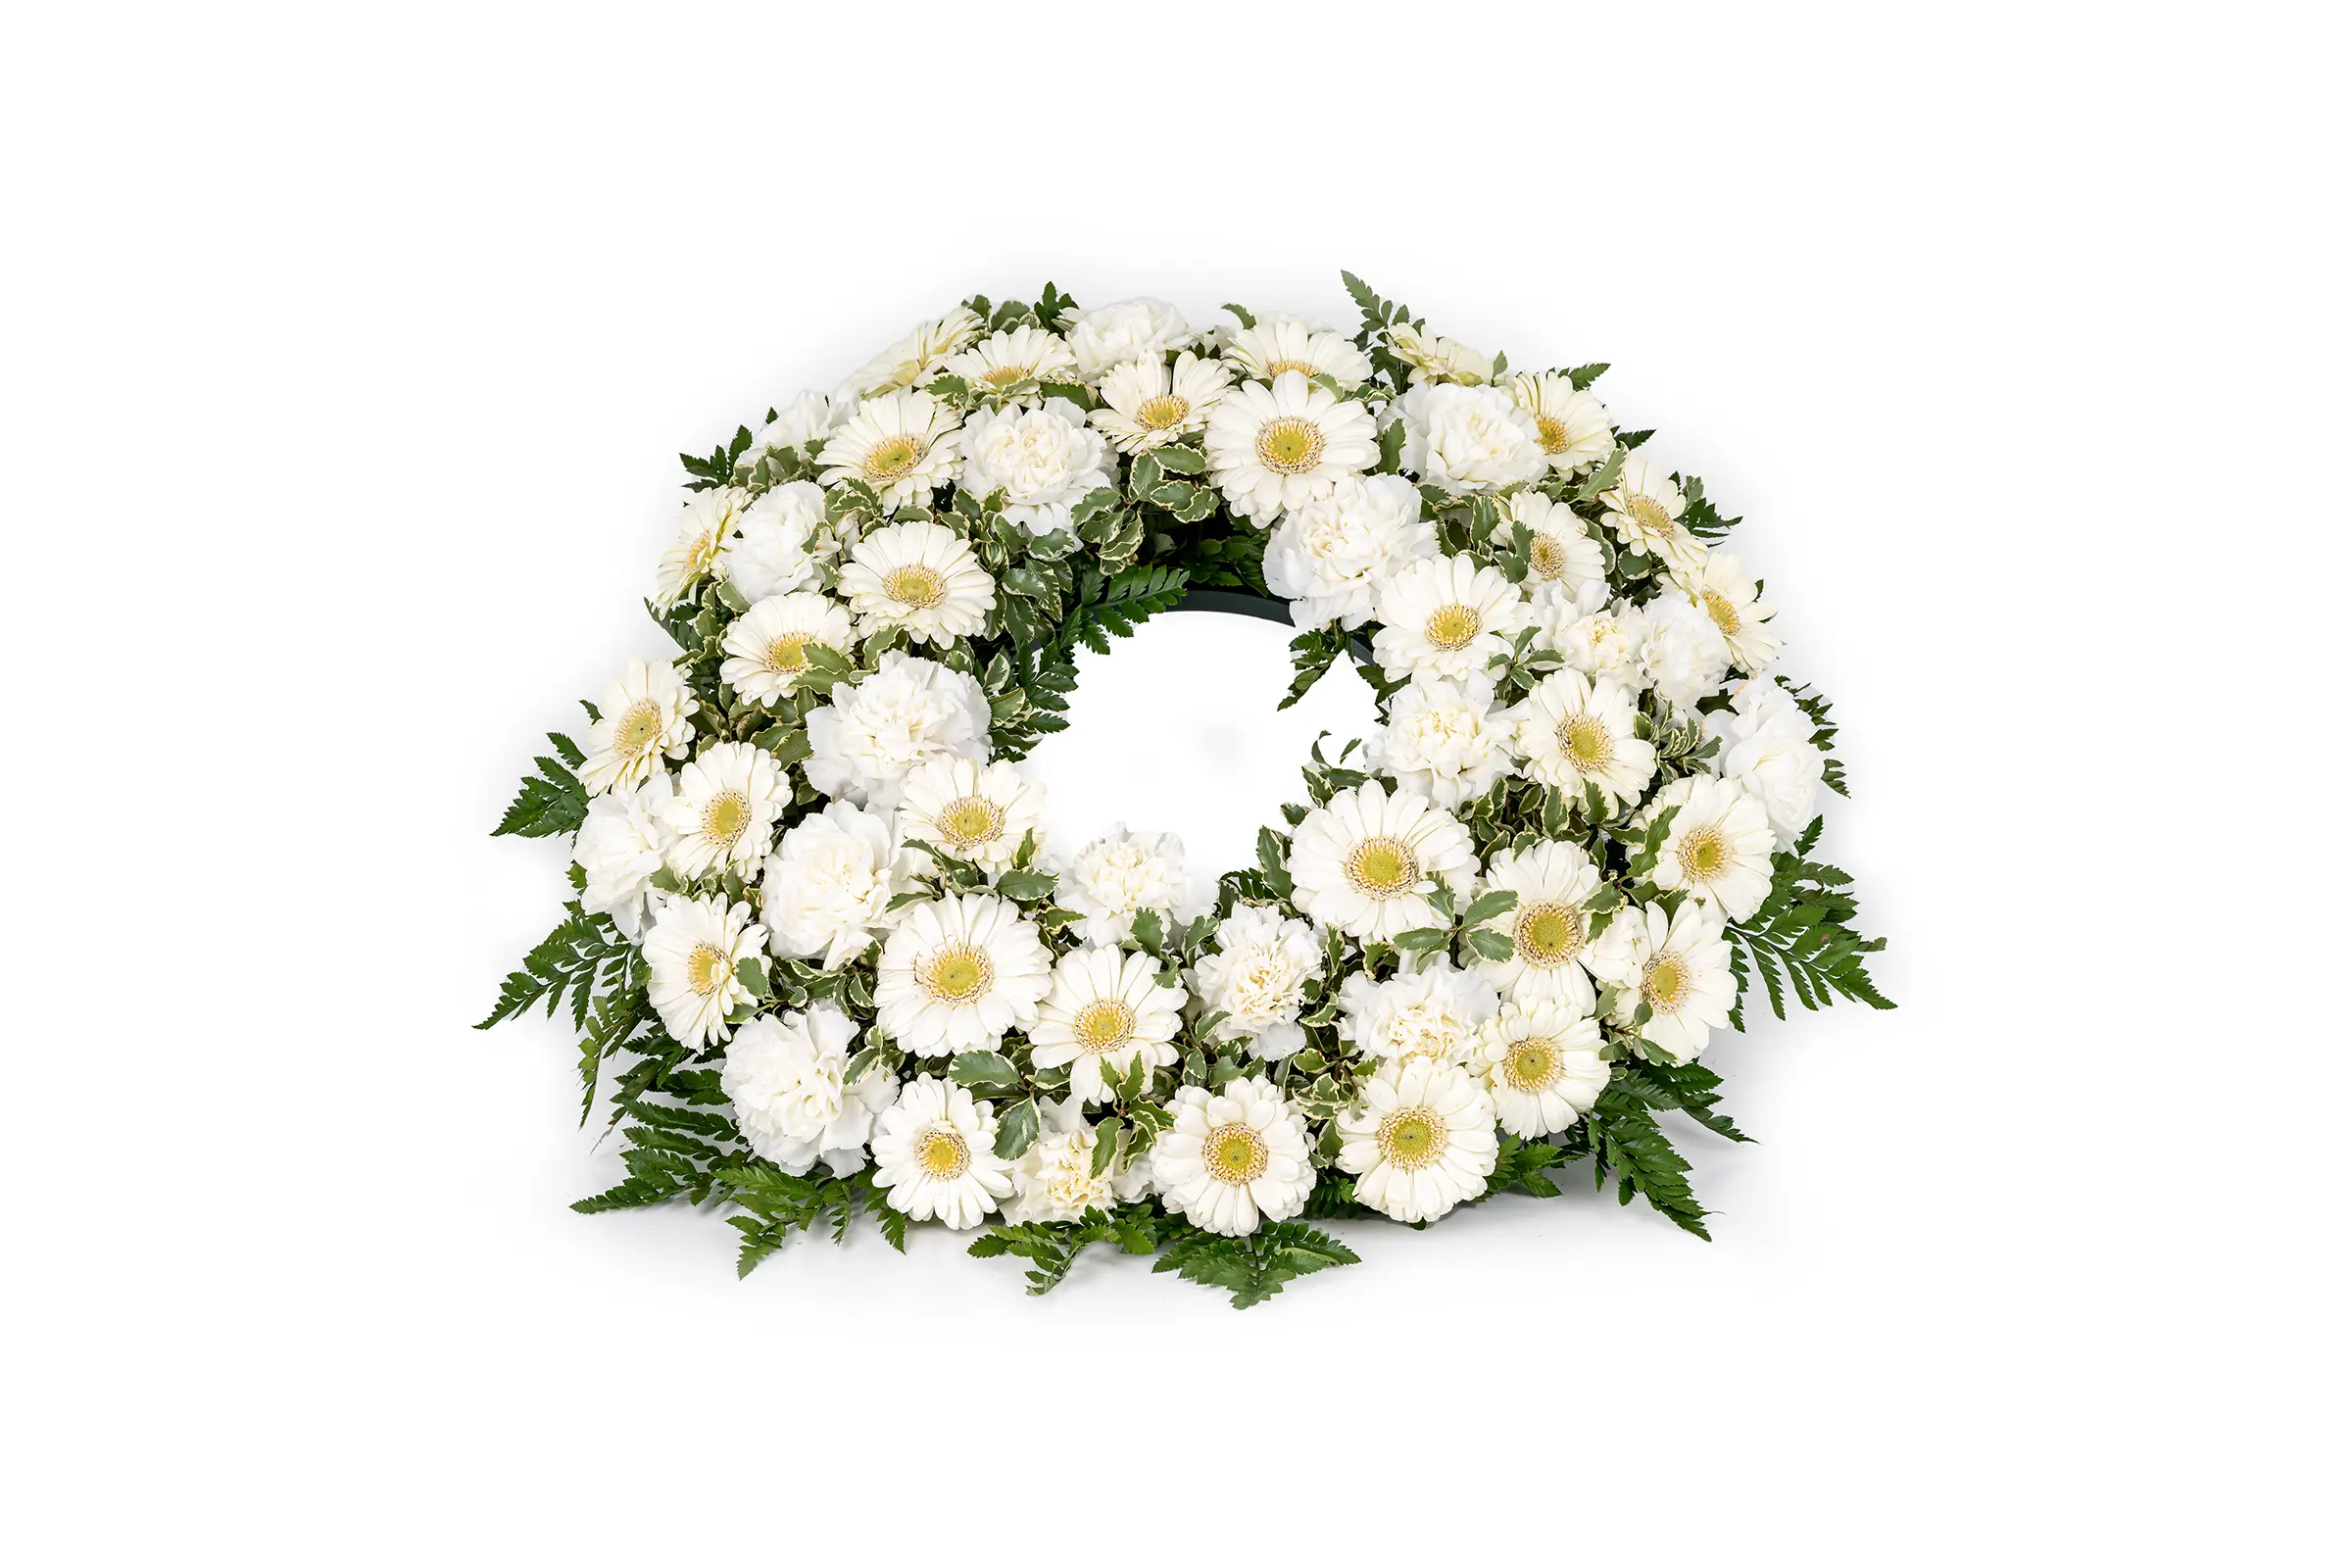 Trauerfloristik | Urnenkranz | Weiße Blumen